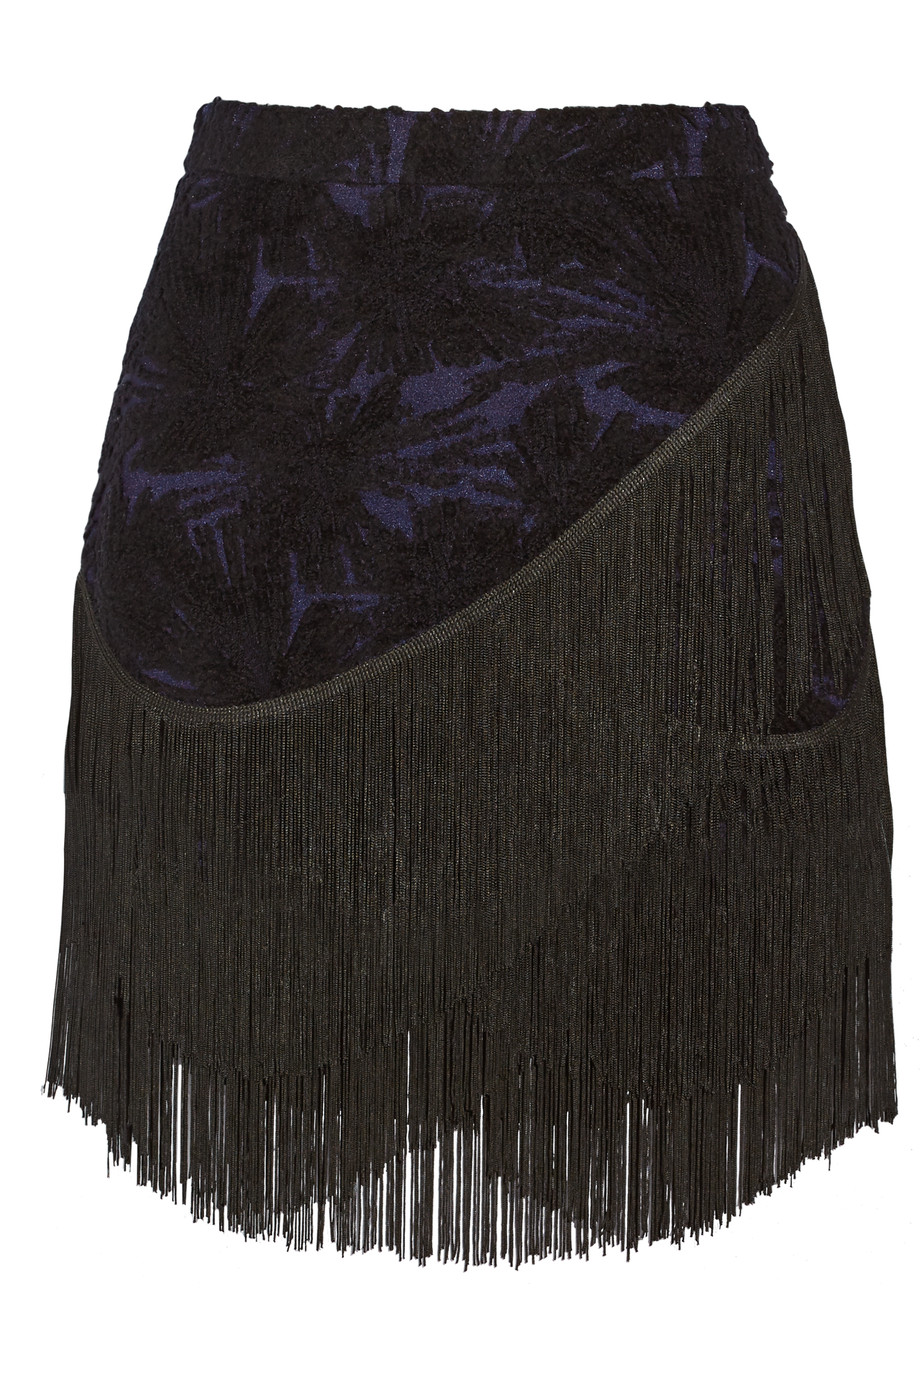 Rebecca Minkoff Mia fringed Embroidered Wool Blend Mini Skirt